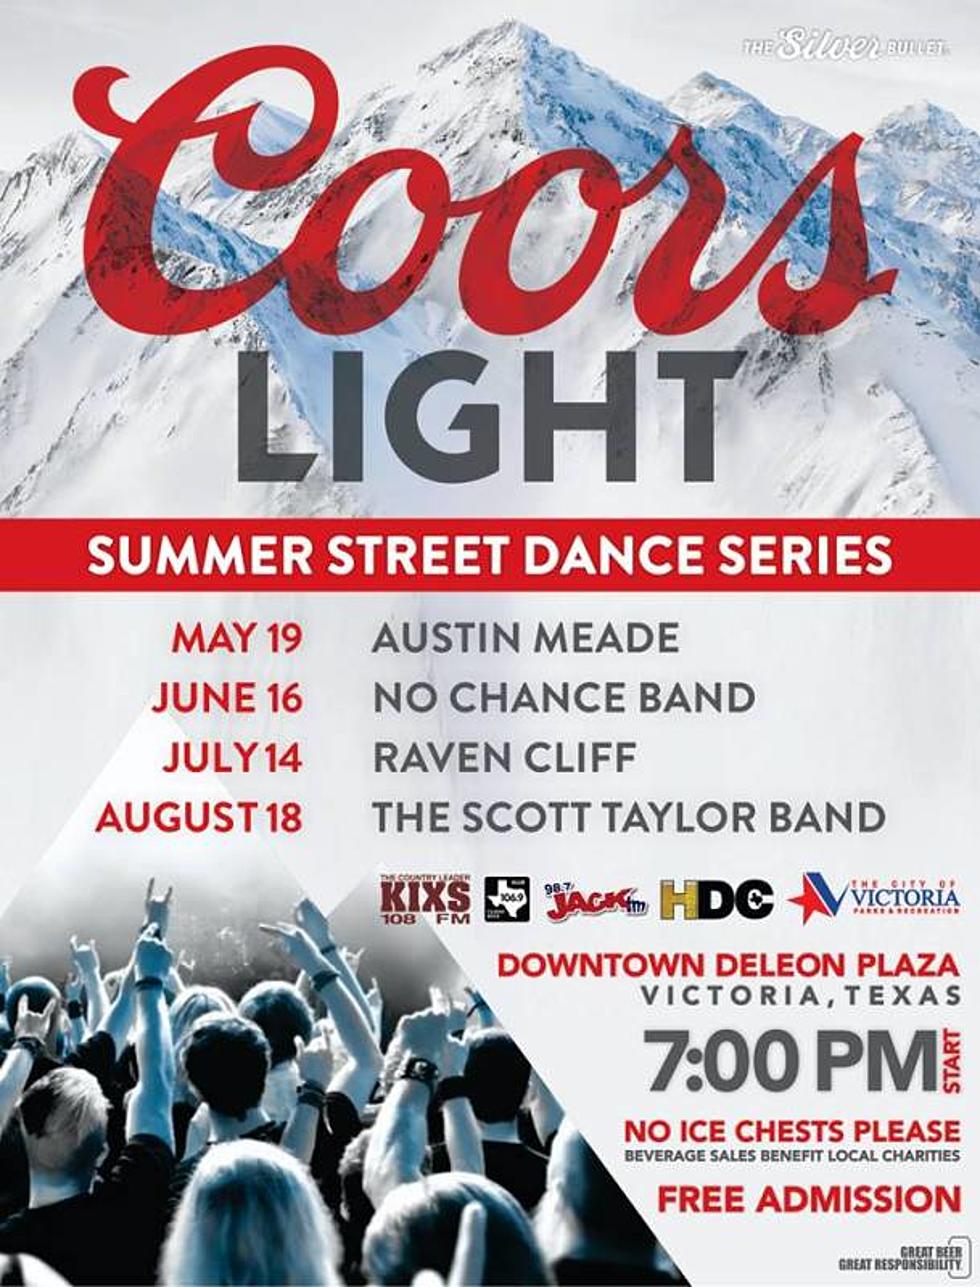 Coors Light Summer Street Dance Continues Next Thursday